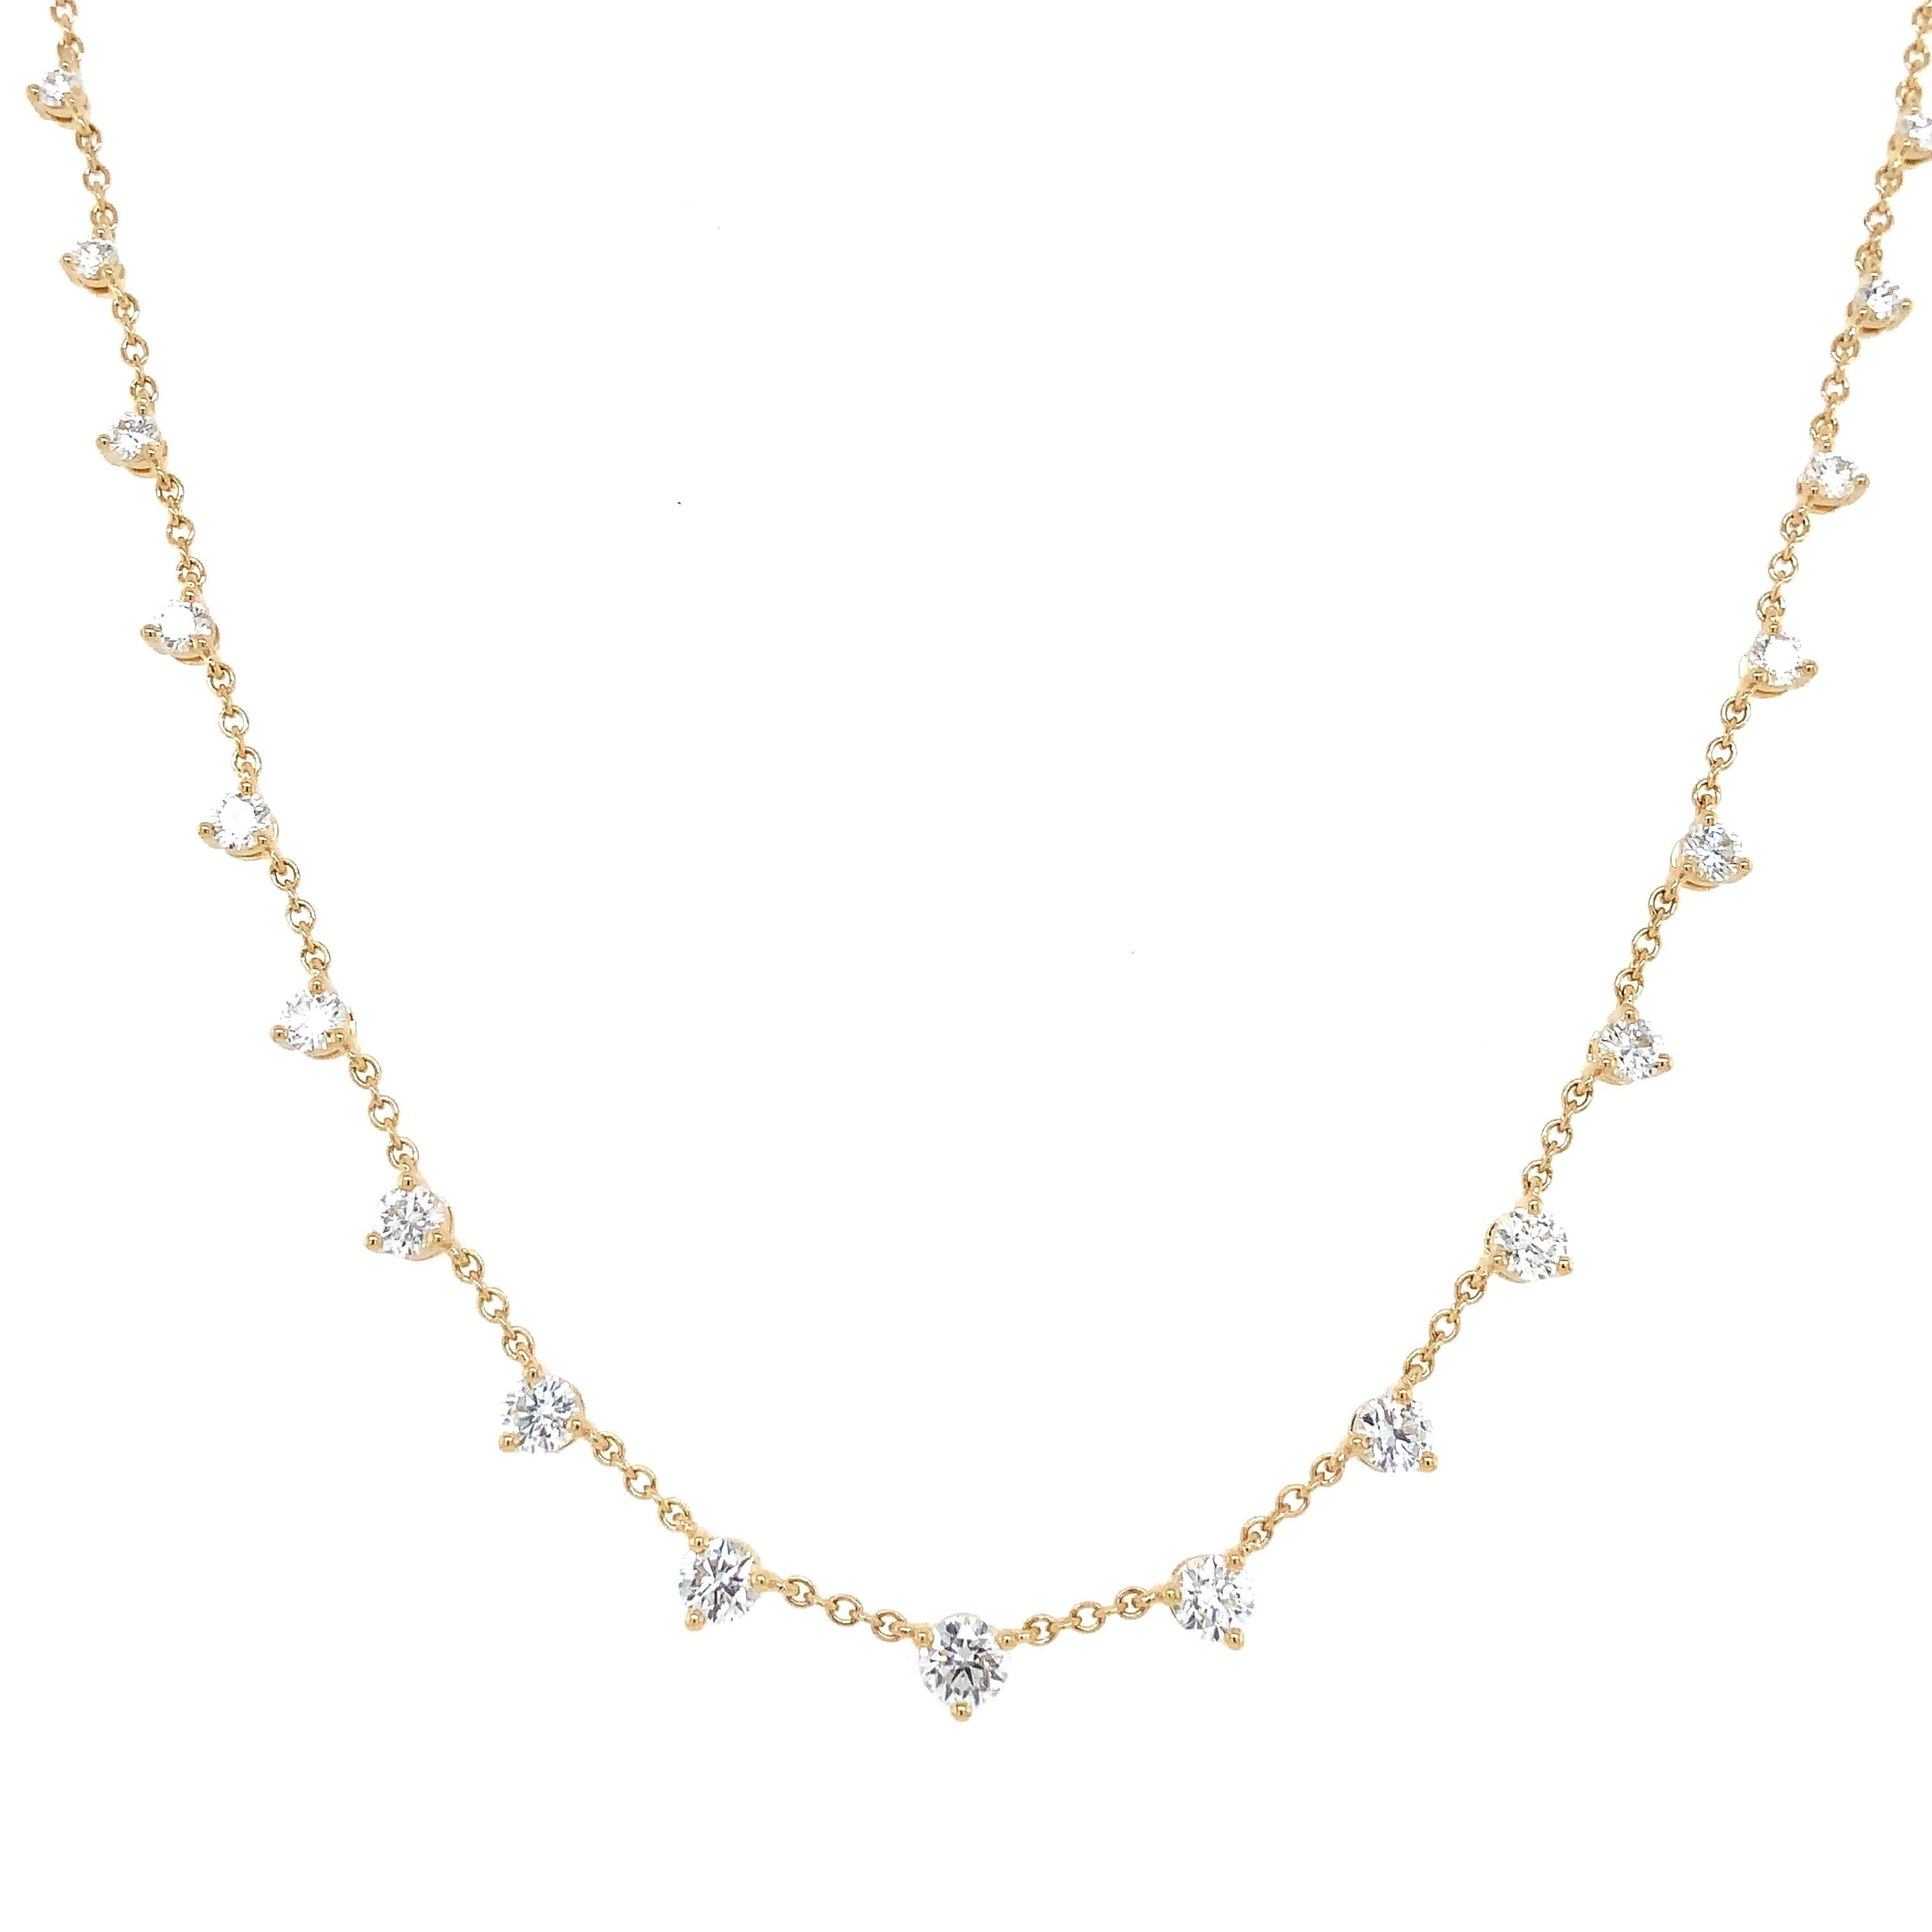 Le collier en or jaune 18 carats Memoire Essential Collection 3 Prong Graduated Diamond Necklace présente 21 diamants ronds de taille brillant de 1,18 carat, de couleur F-G et de pureté VS1. Il est long de 18 pouces avec un maillon ajustable et pèse